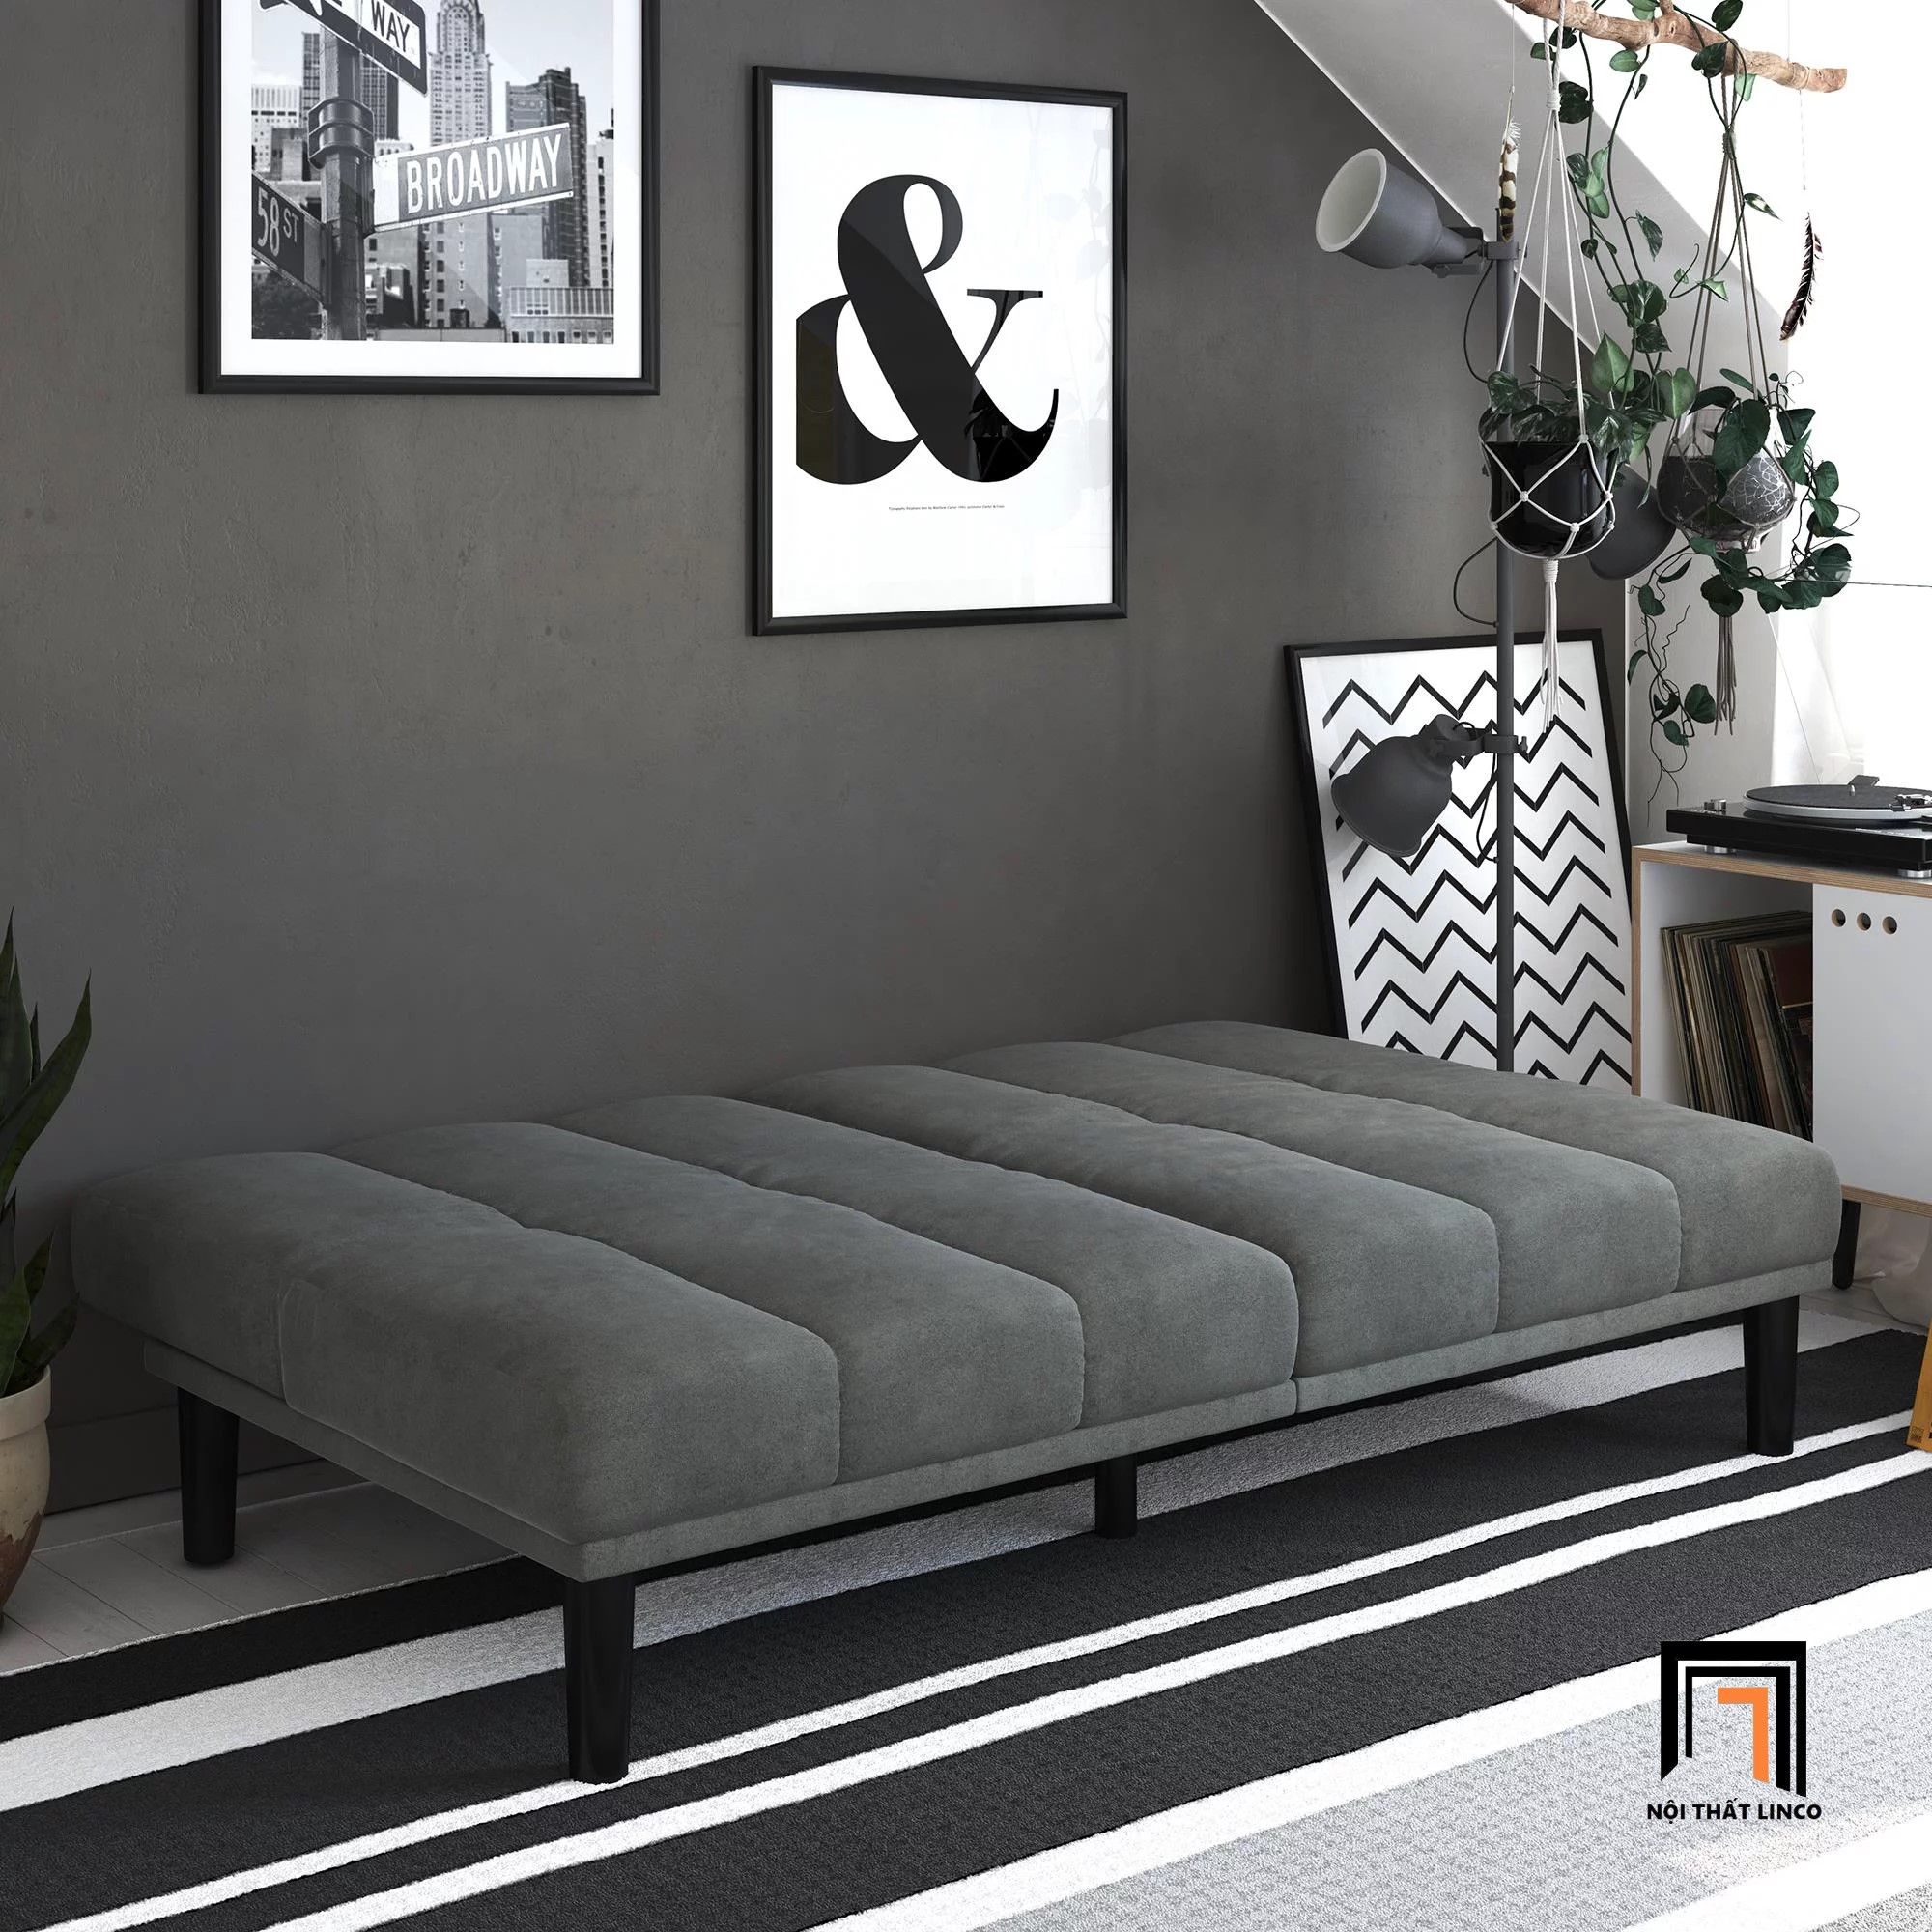  Ghế sofa giường thông minh GB15 Msay 1m8 xám đen 